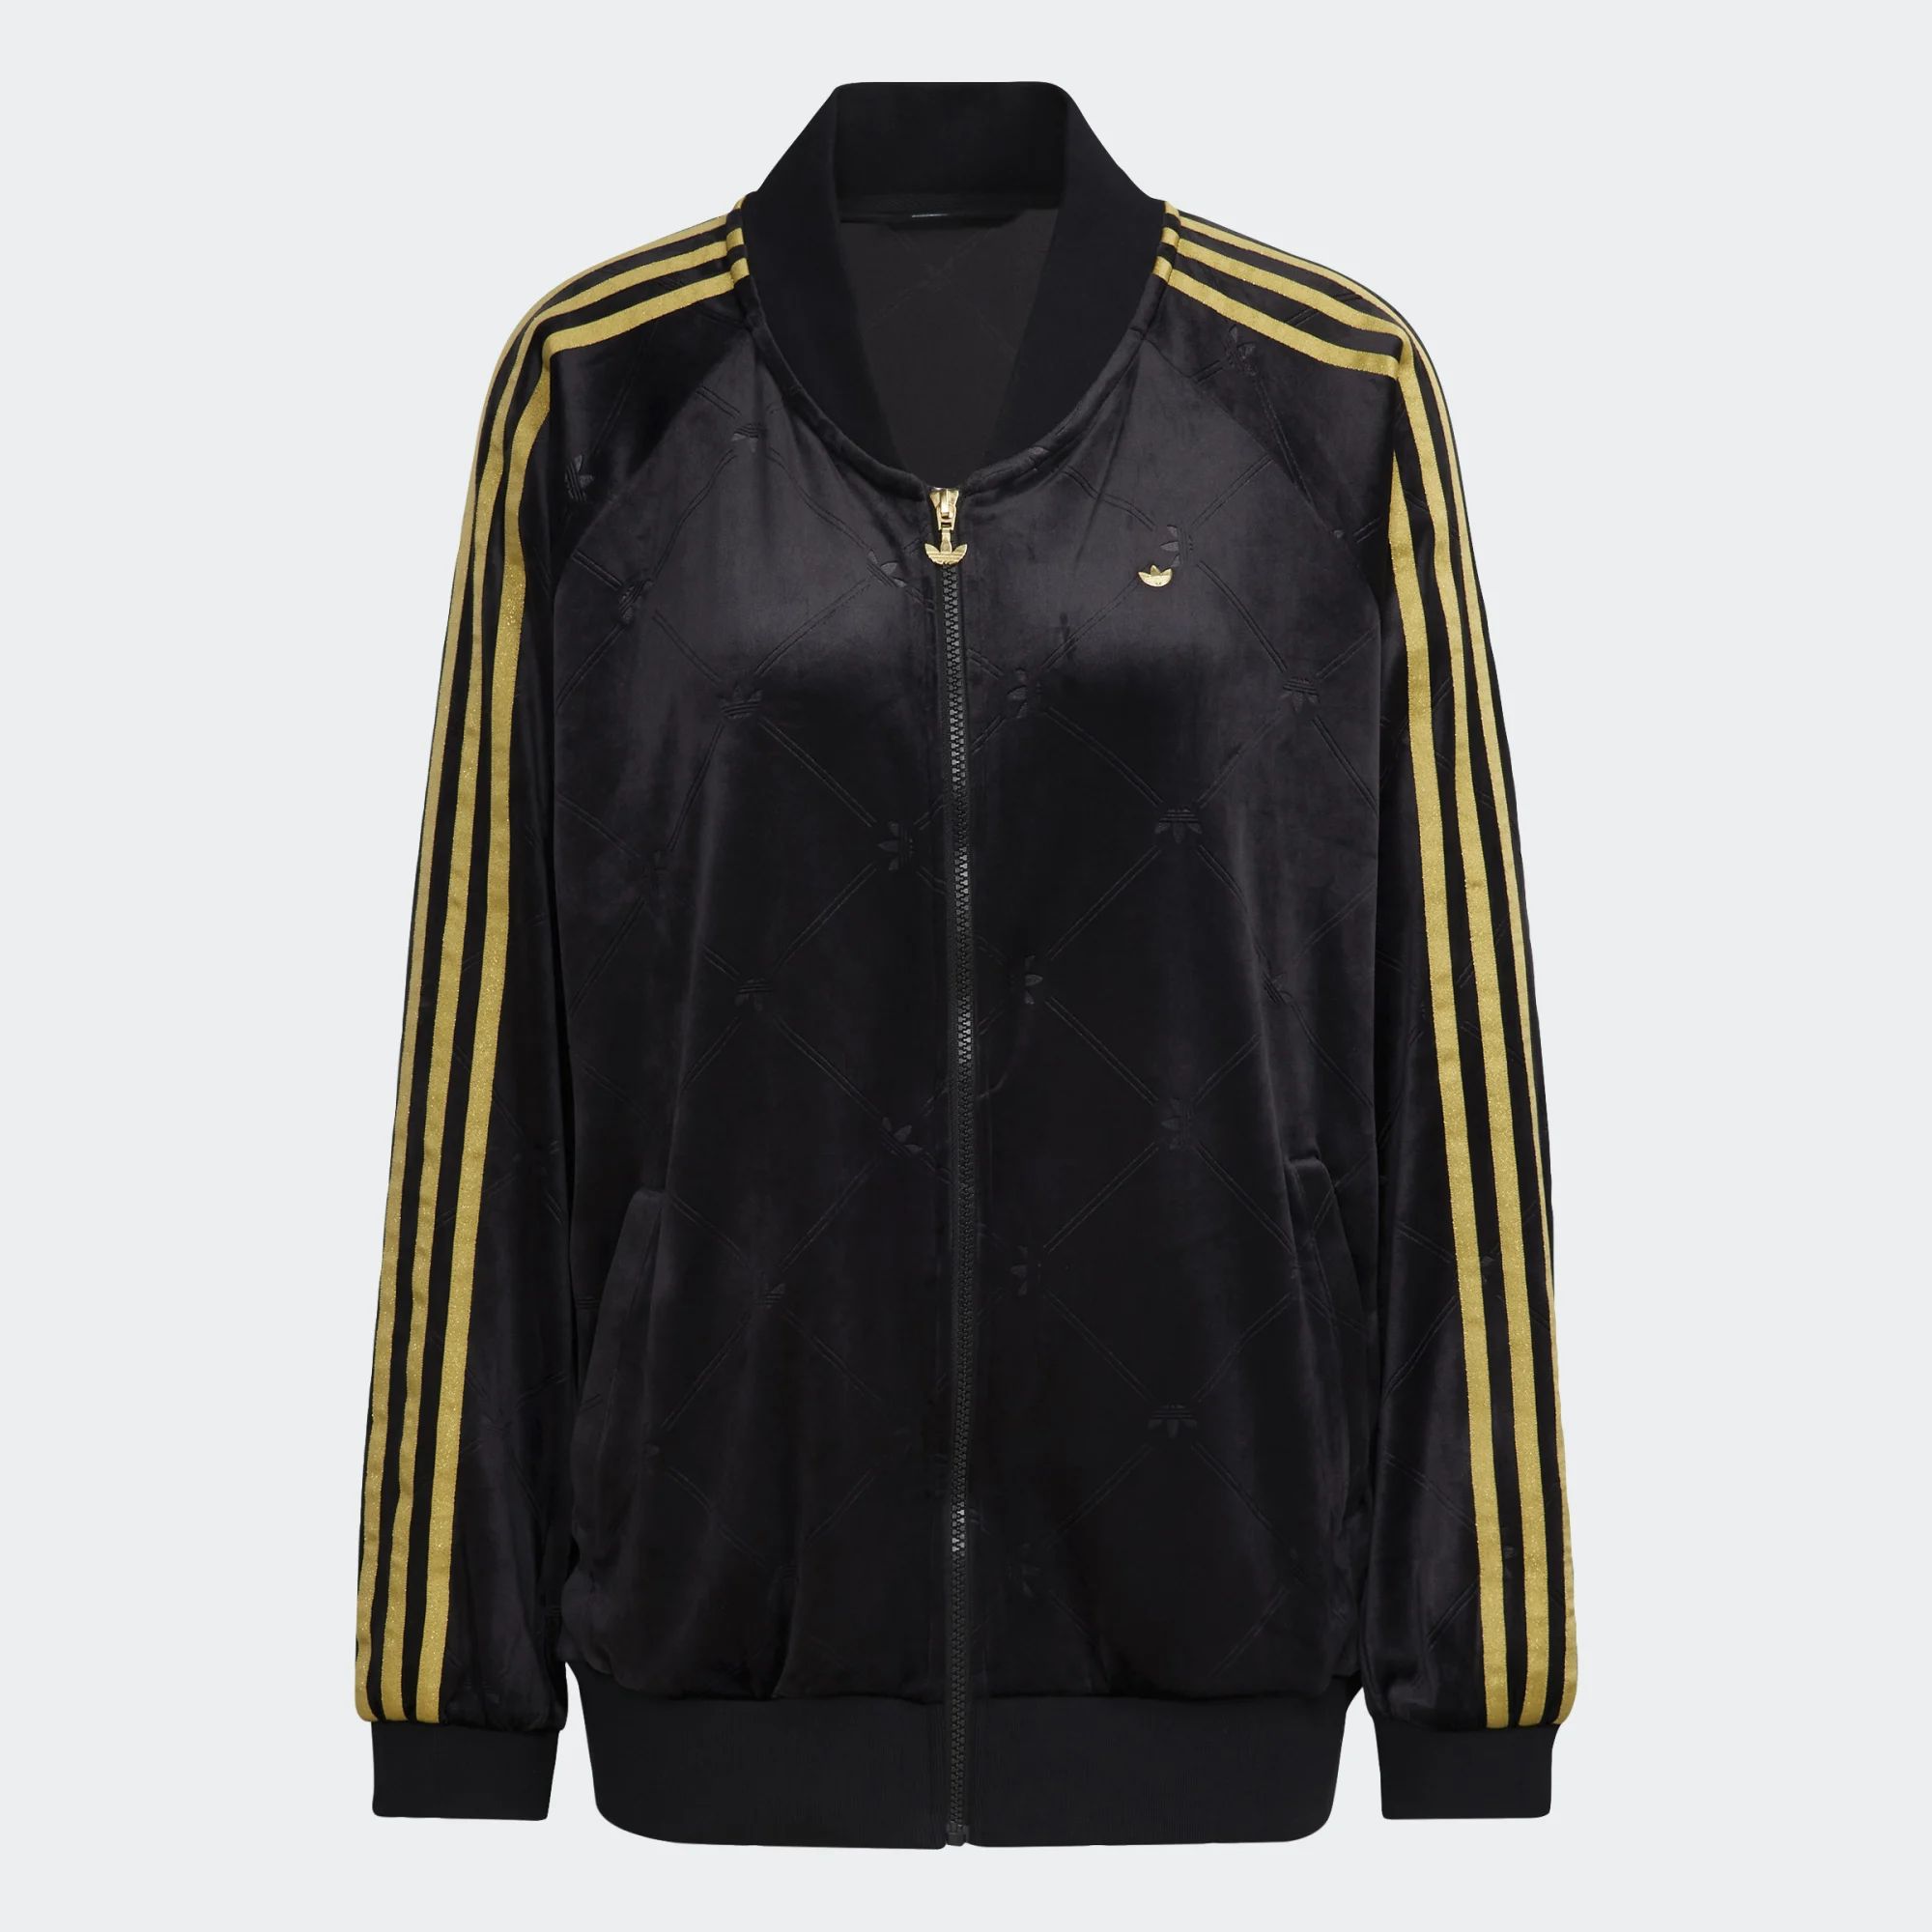 Толстовка Adidas для женщин, H18020, на молнии, black, размер 30